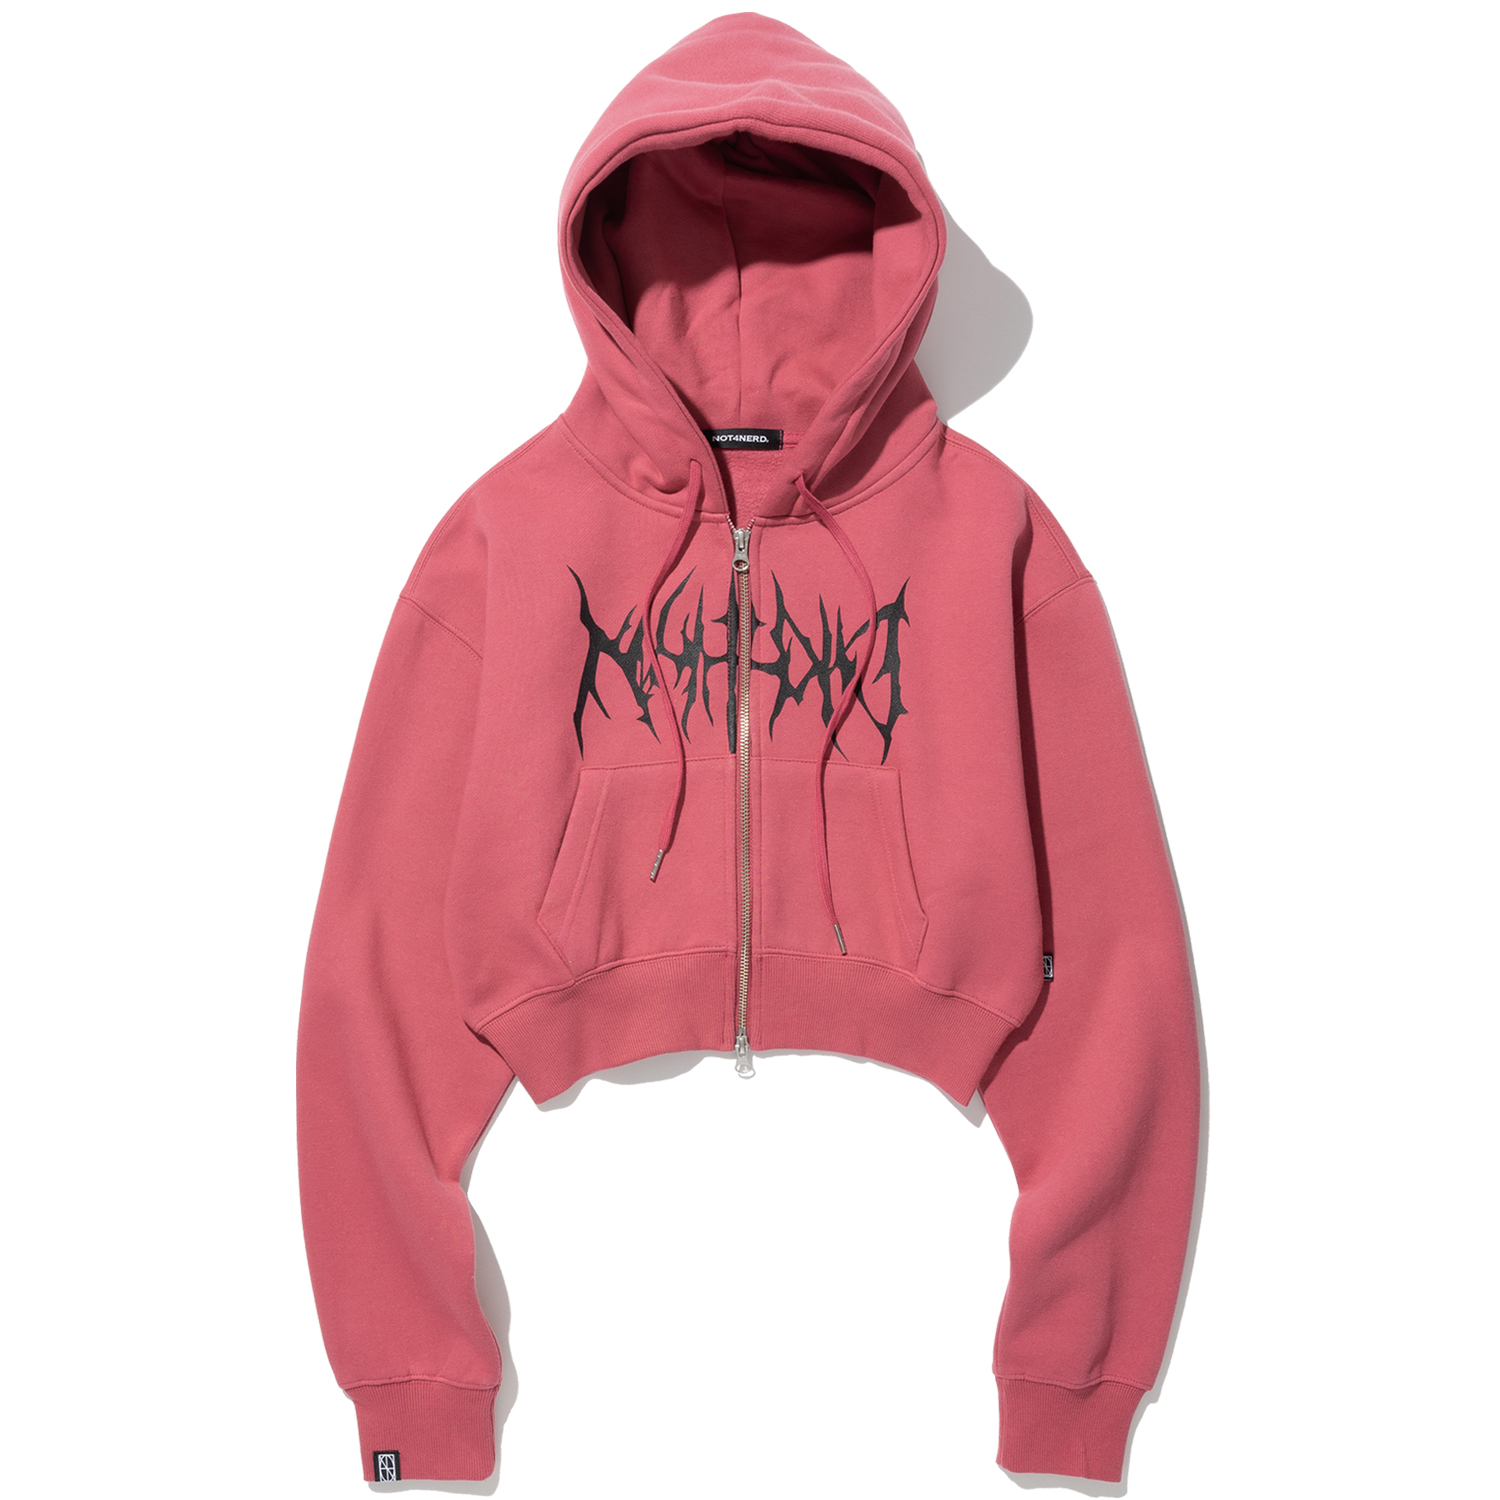 W Satan Logo Hood Zip Up - Pink,NOT4NERD